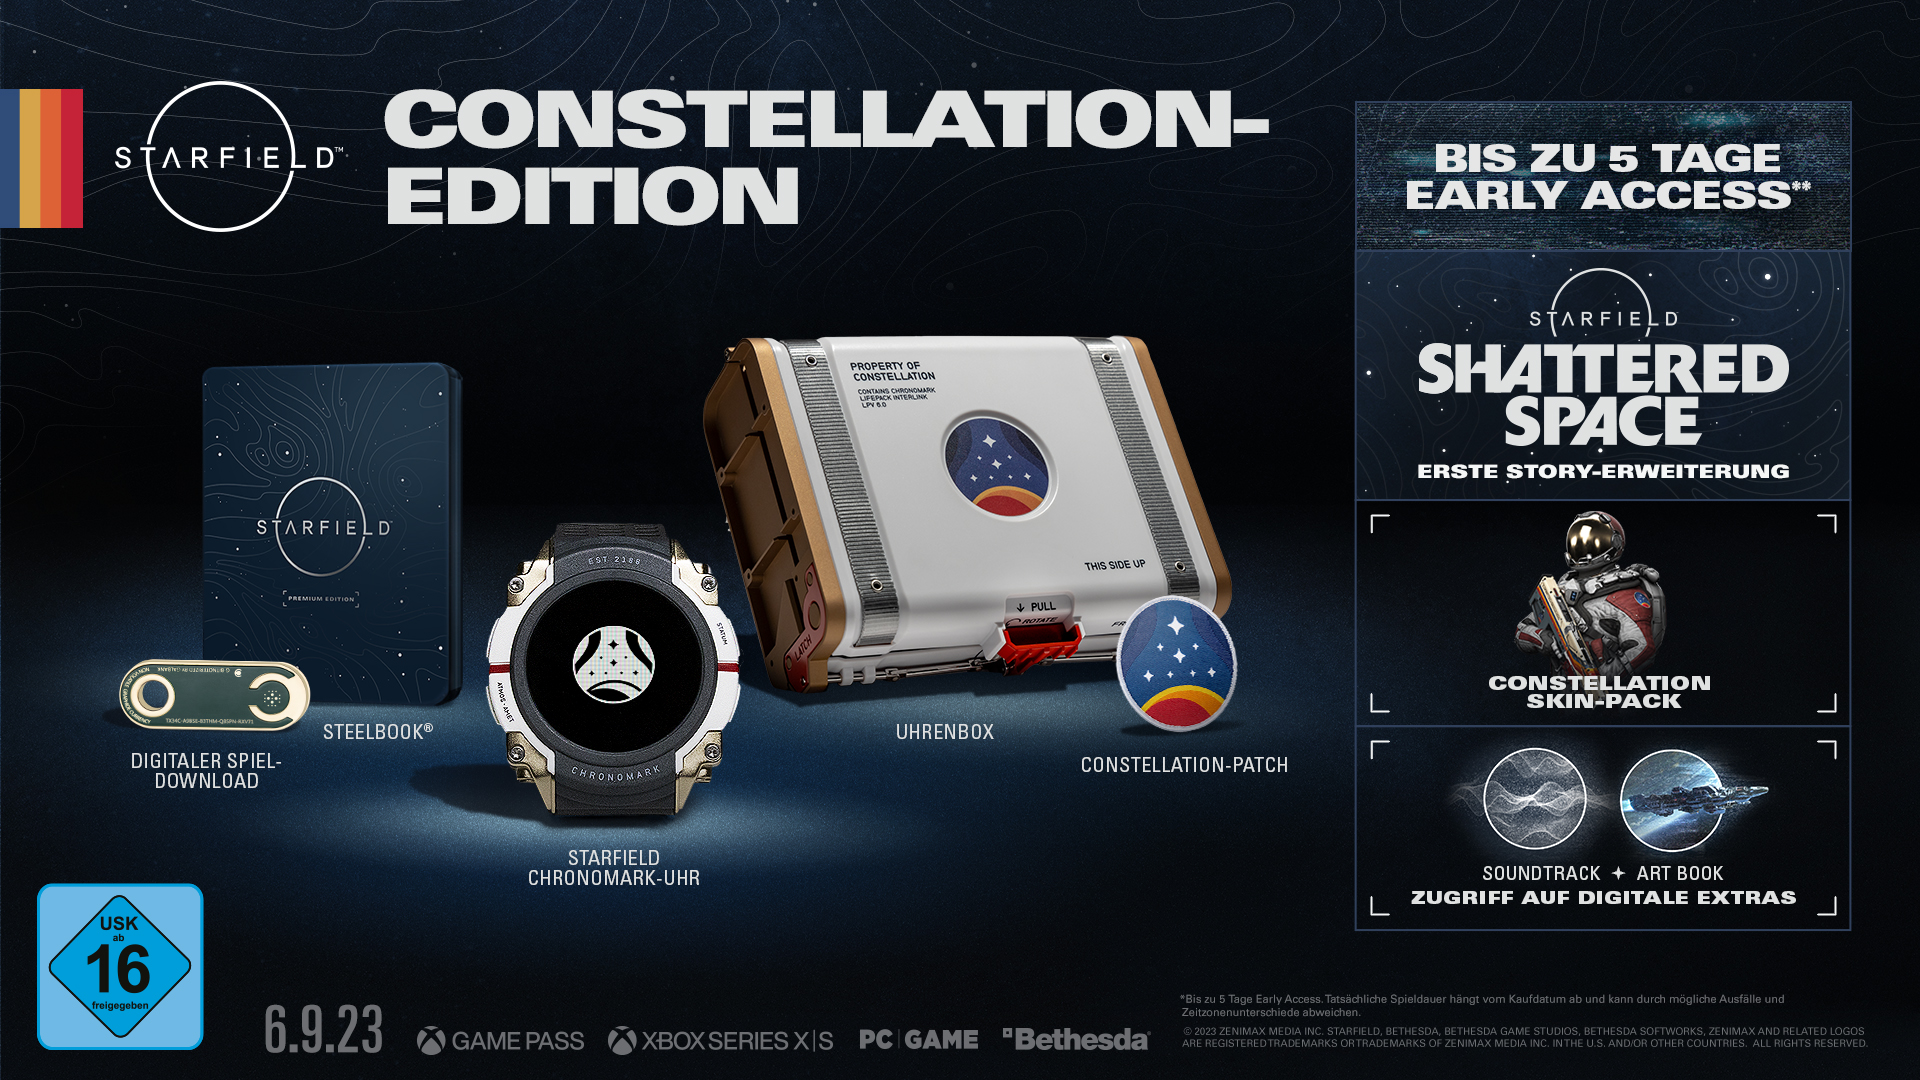 [PC] - Constellation-Edition - Starfield (Steam)